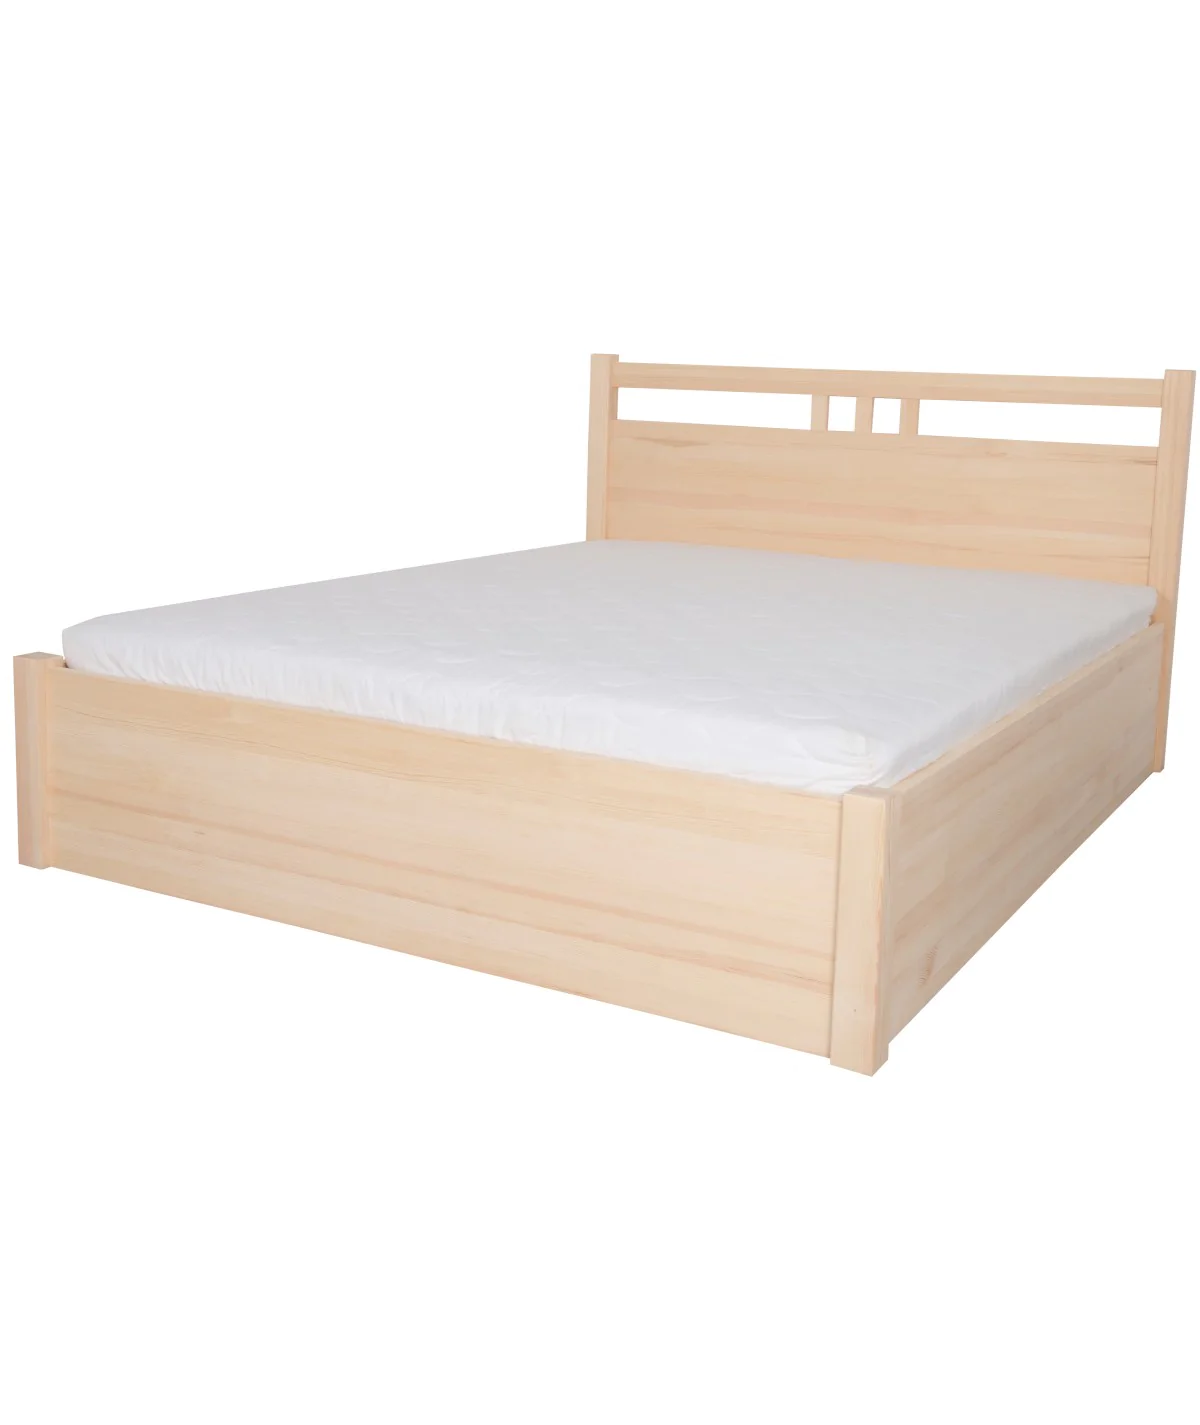 Łóżko bukowe MALACHIT 5 STOLMIS podnoszone na ramie drewnianej